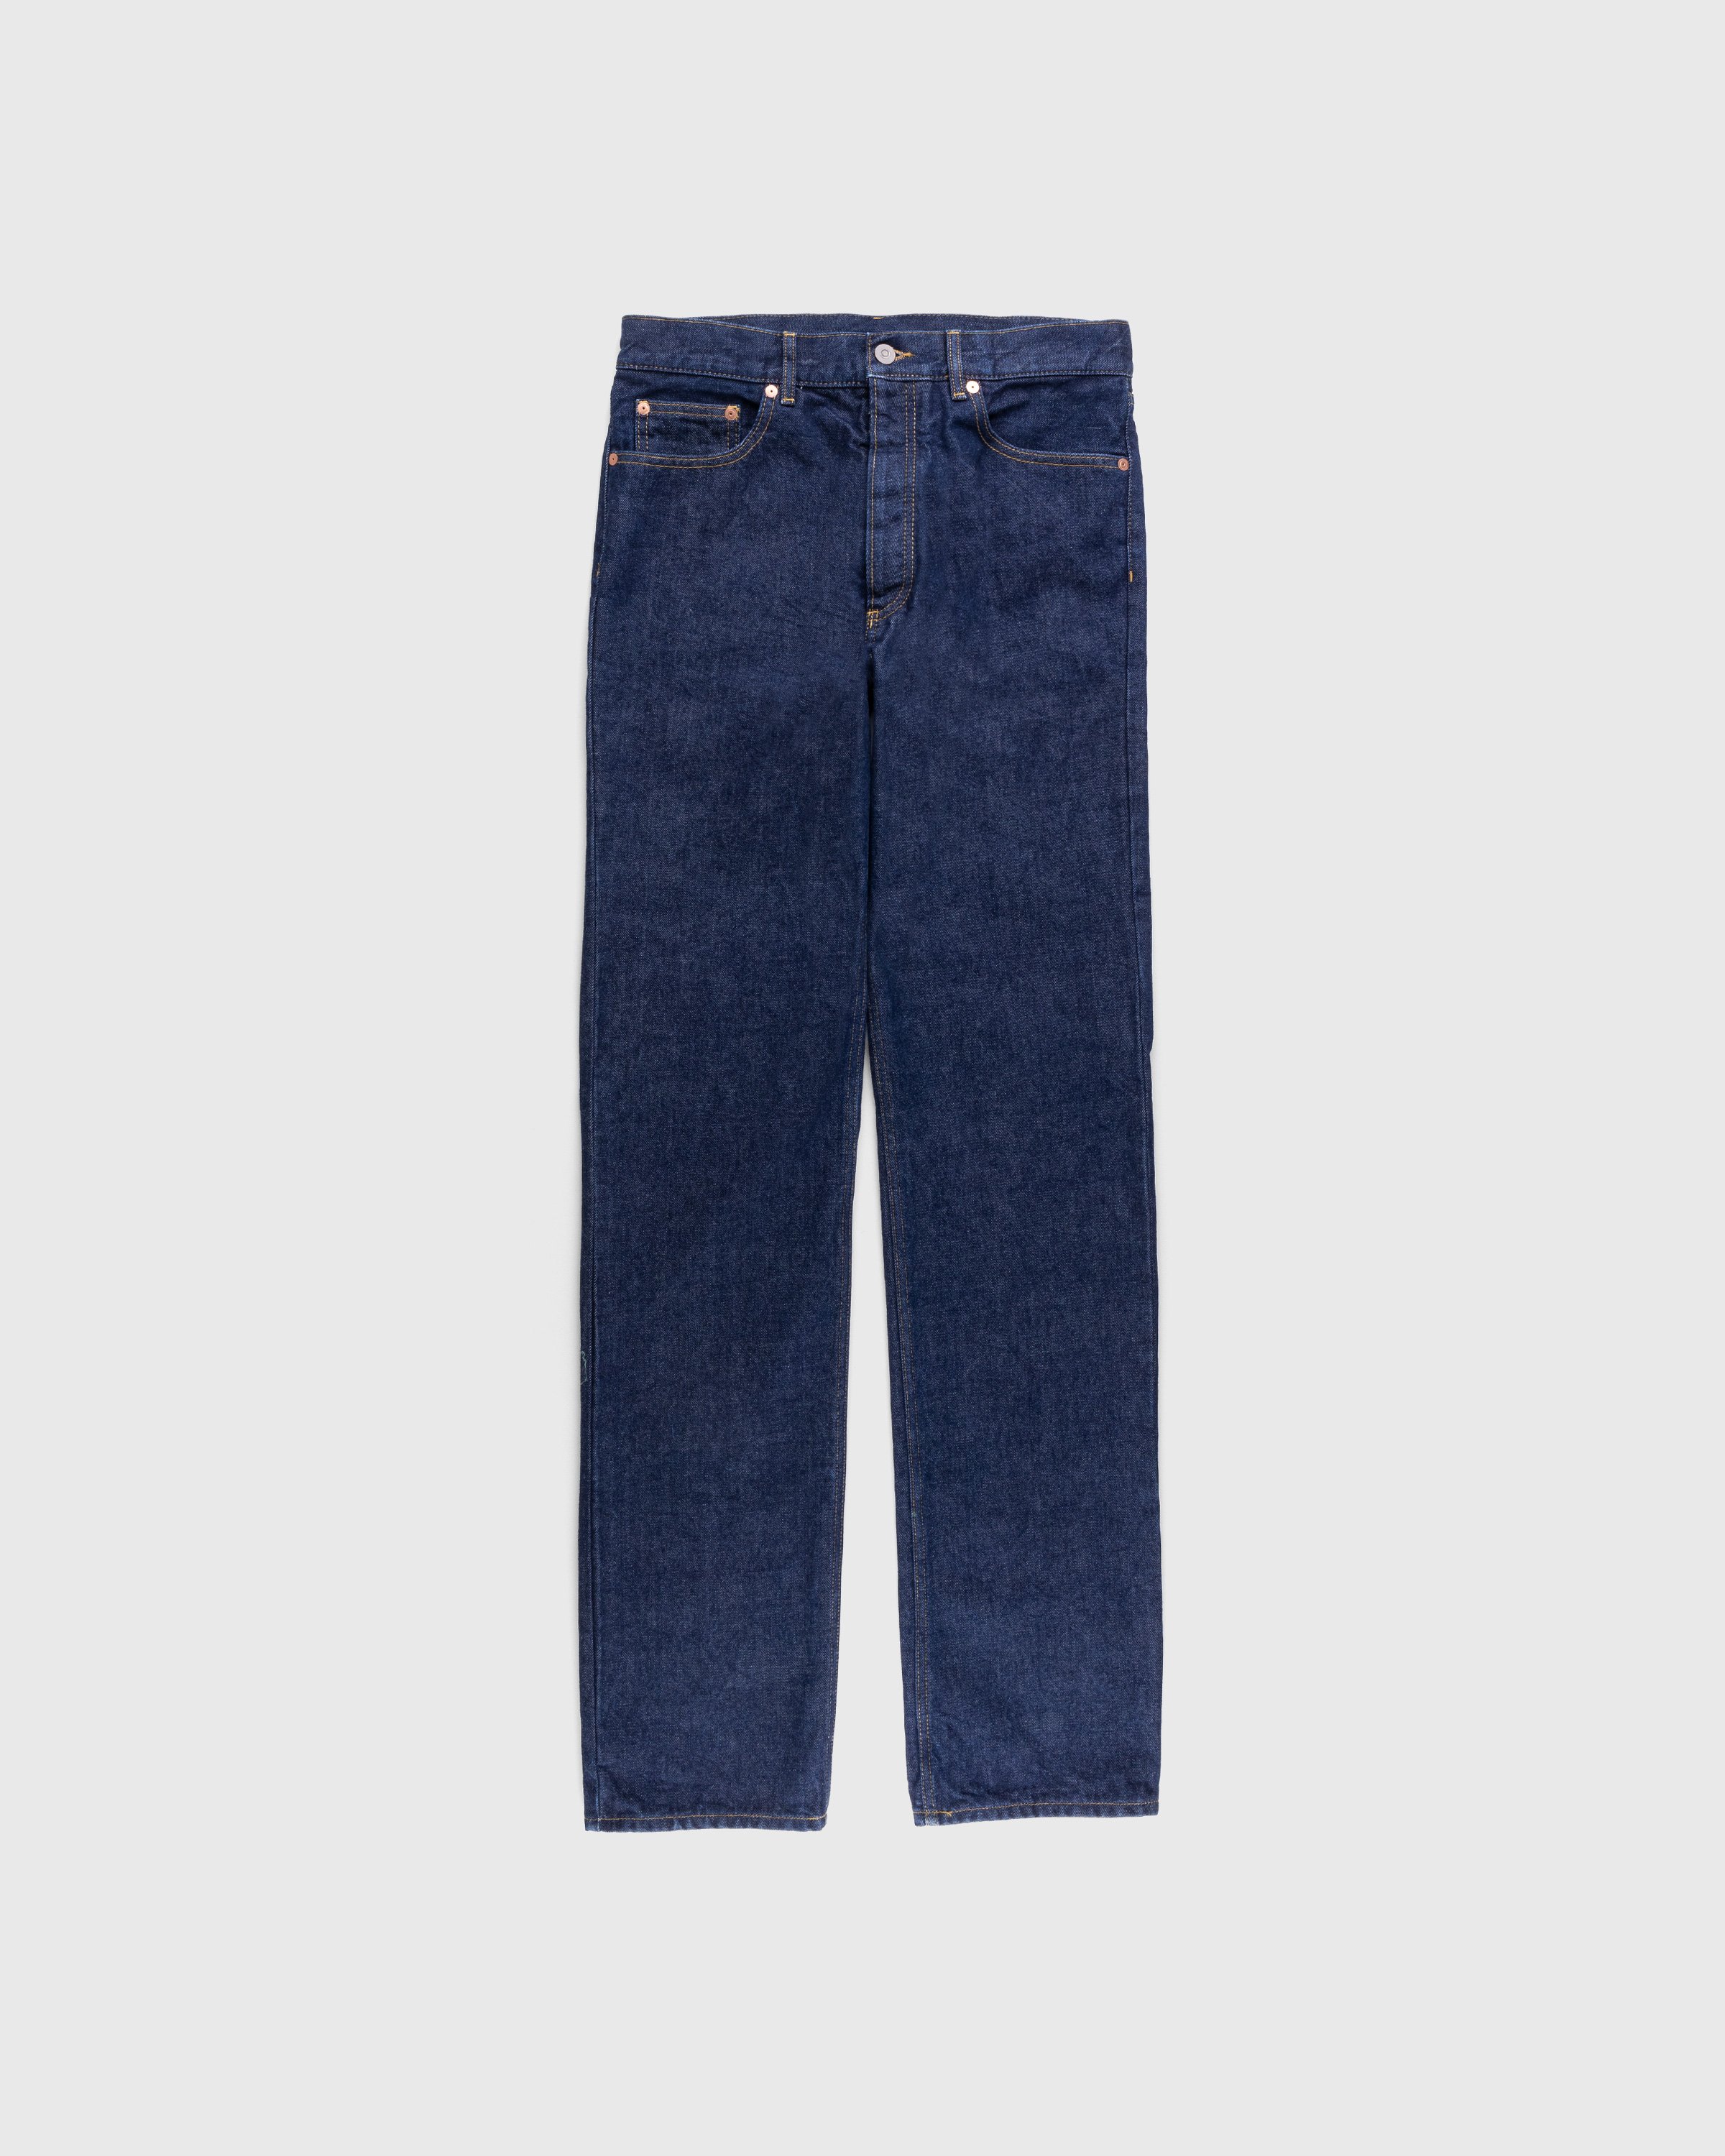 Maison Margiela - 5 Pocket Pants Indigo - Clothing - Blue - Image 1